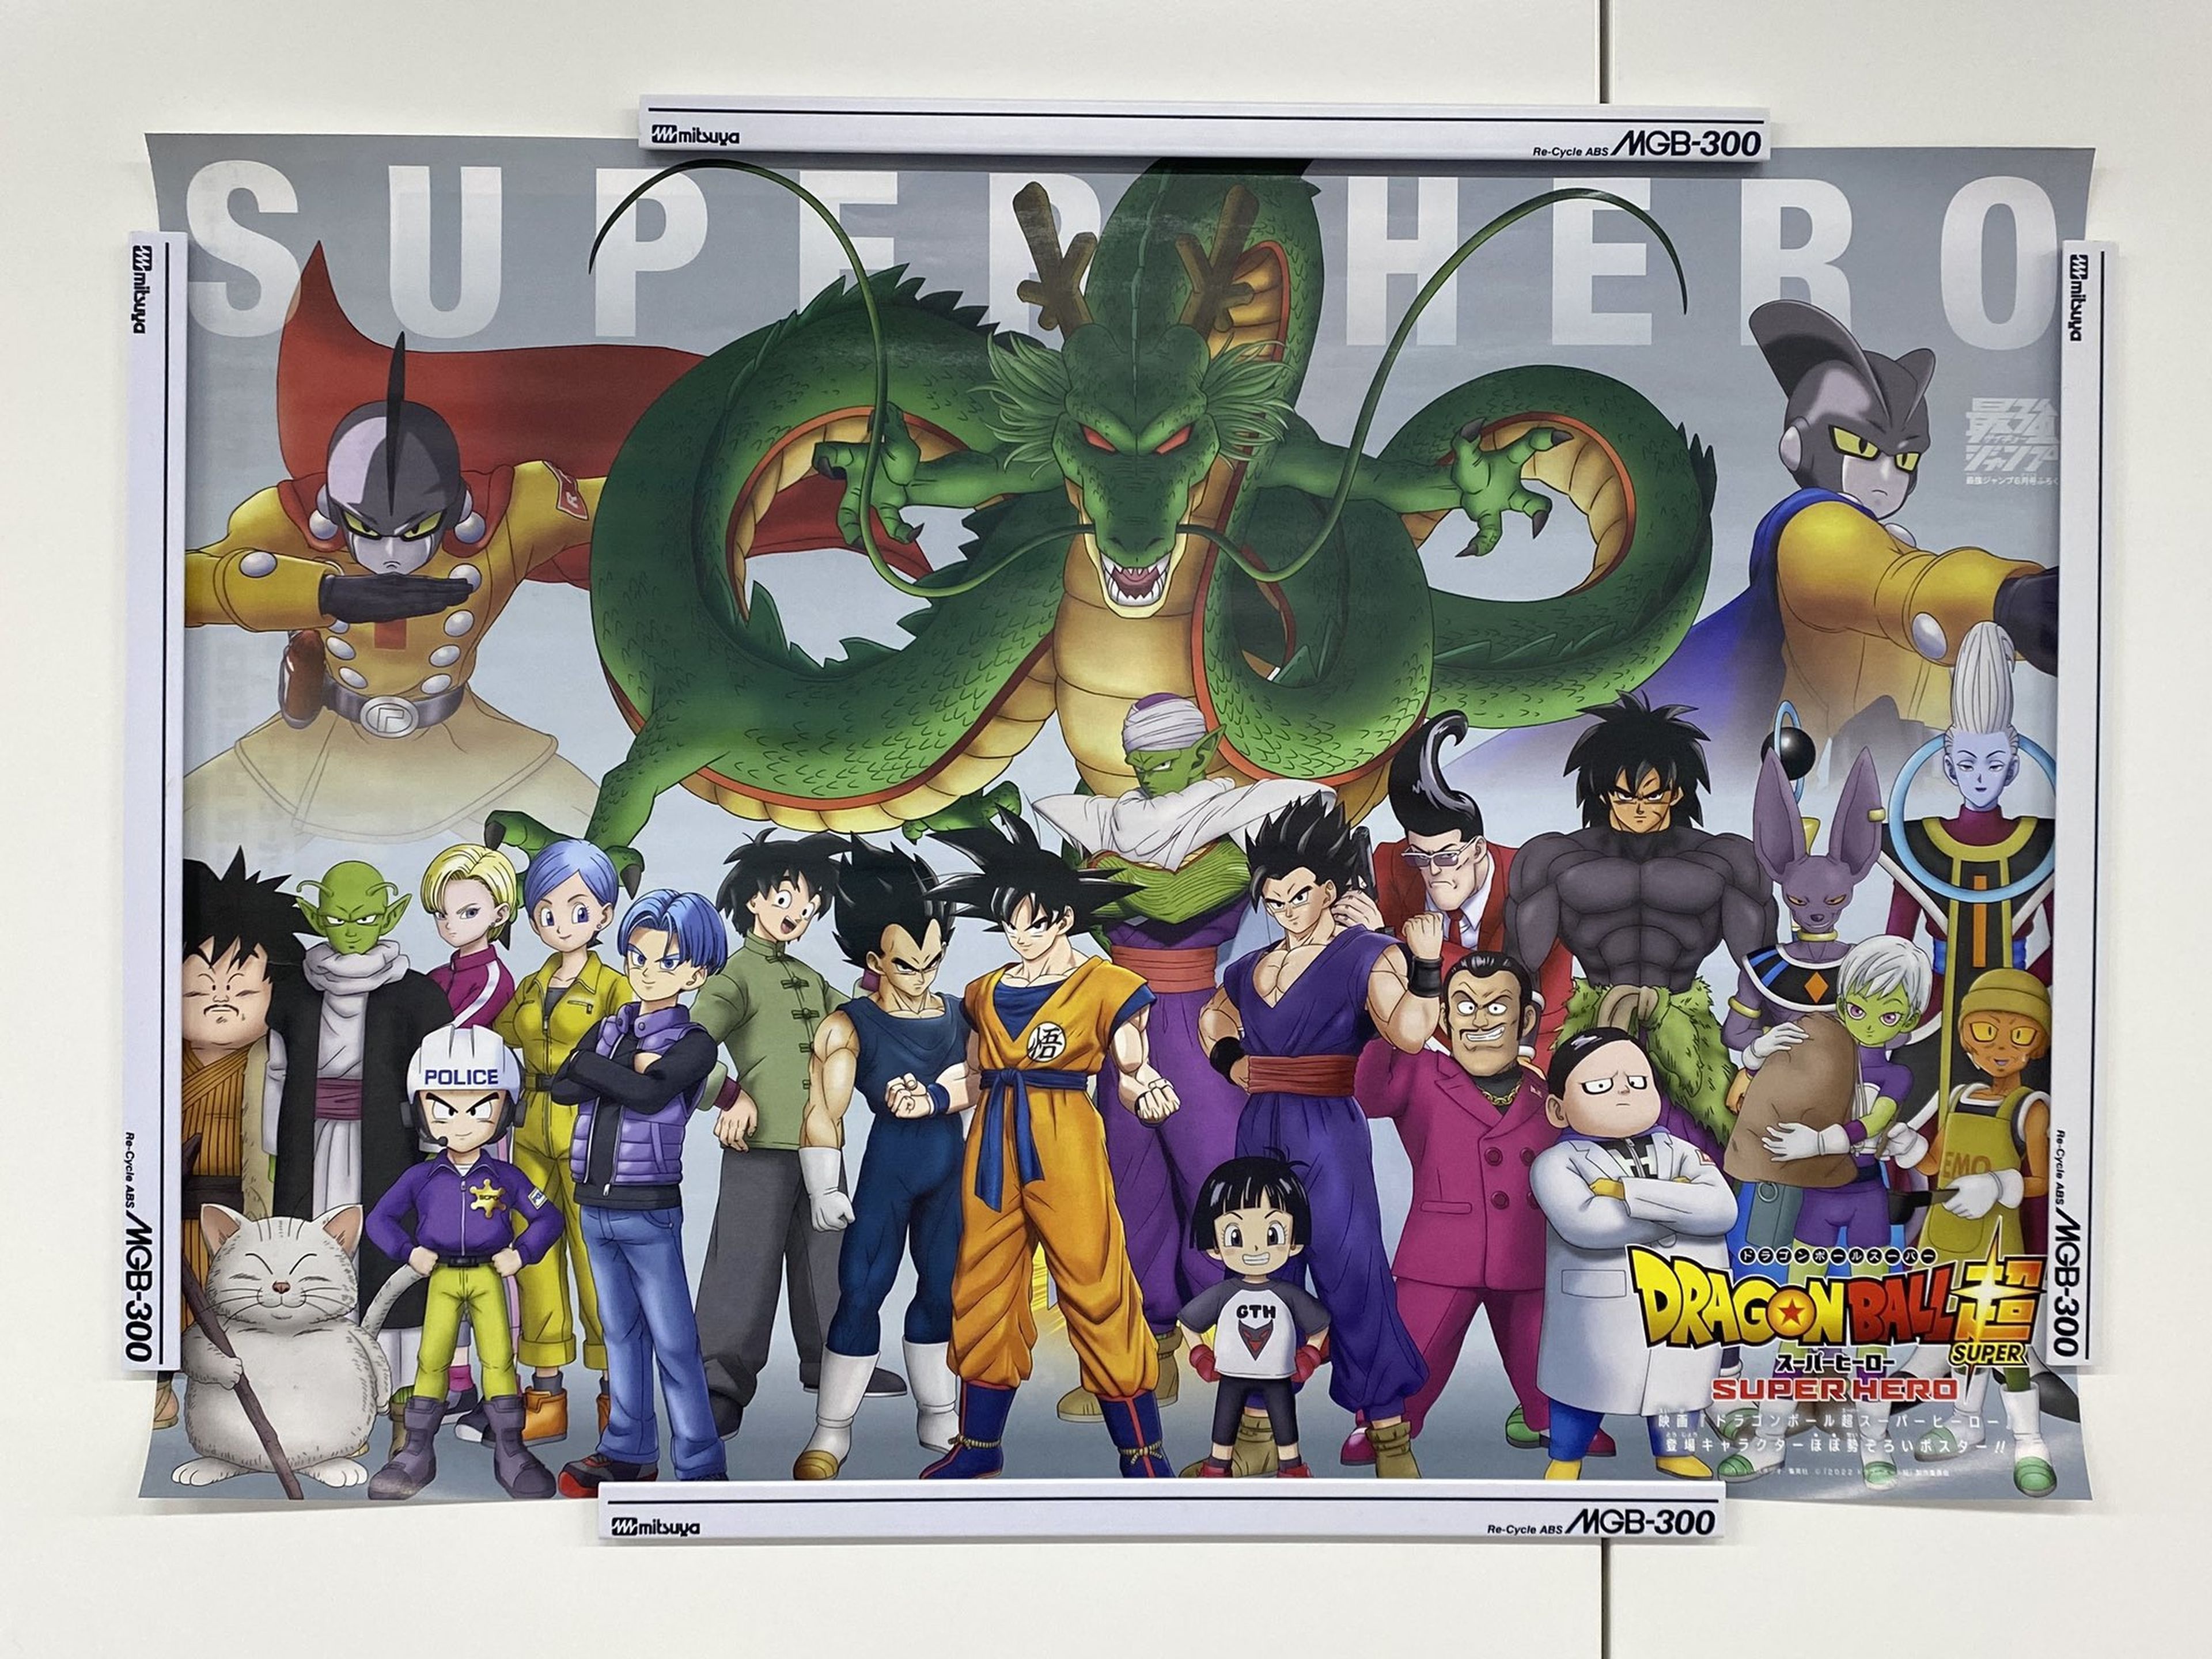 Dragon Ball Super: Super Hero - Desvelado un nuevo póster promocional de la película con Shenron como protagonista. ¿Qué deseo concederá?